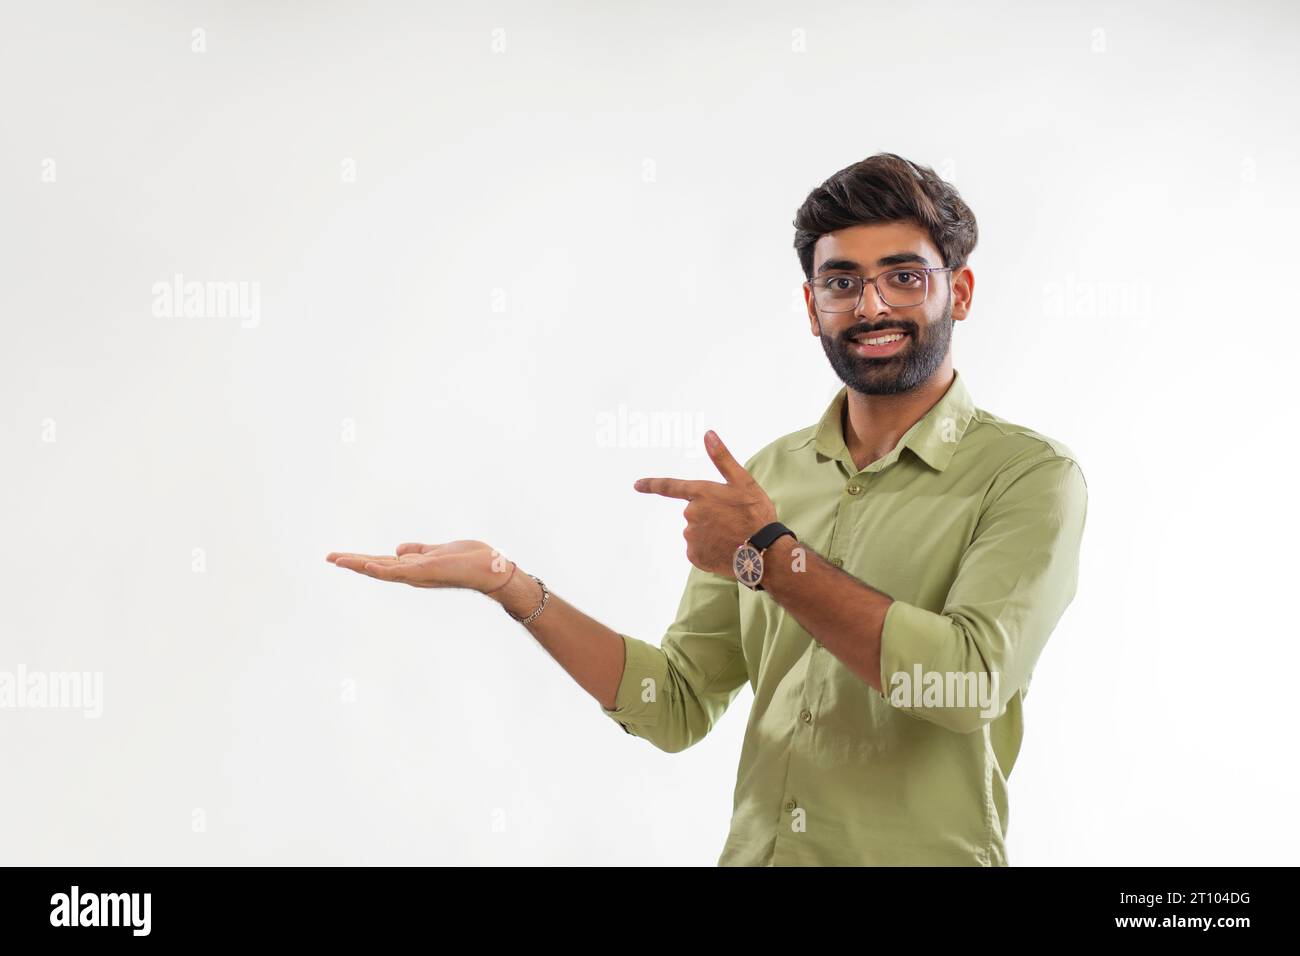 Ritratto di un giovane che punta alla sua palma vuota su sfondo bianco Foto Stock